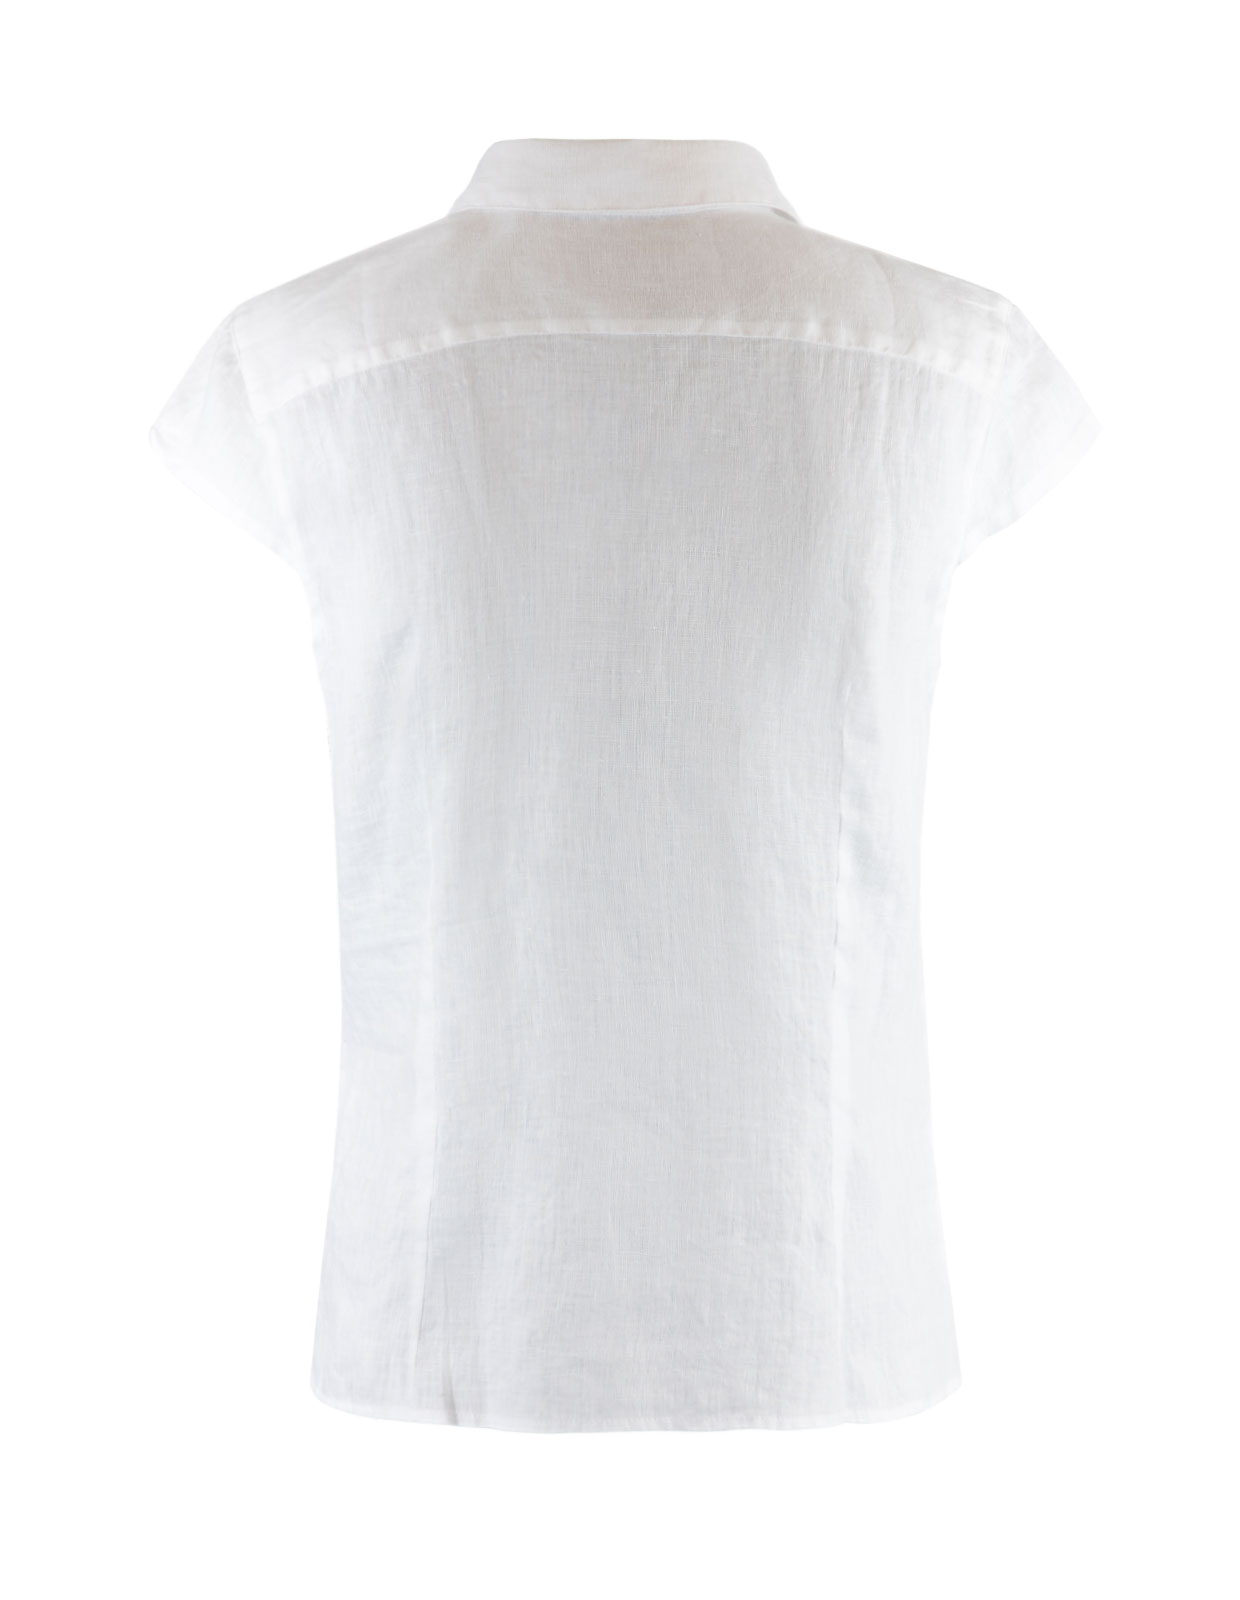 Linen Shirt Cap Sleeve White